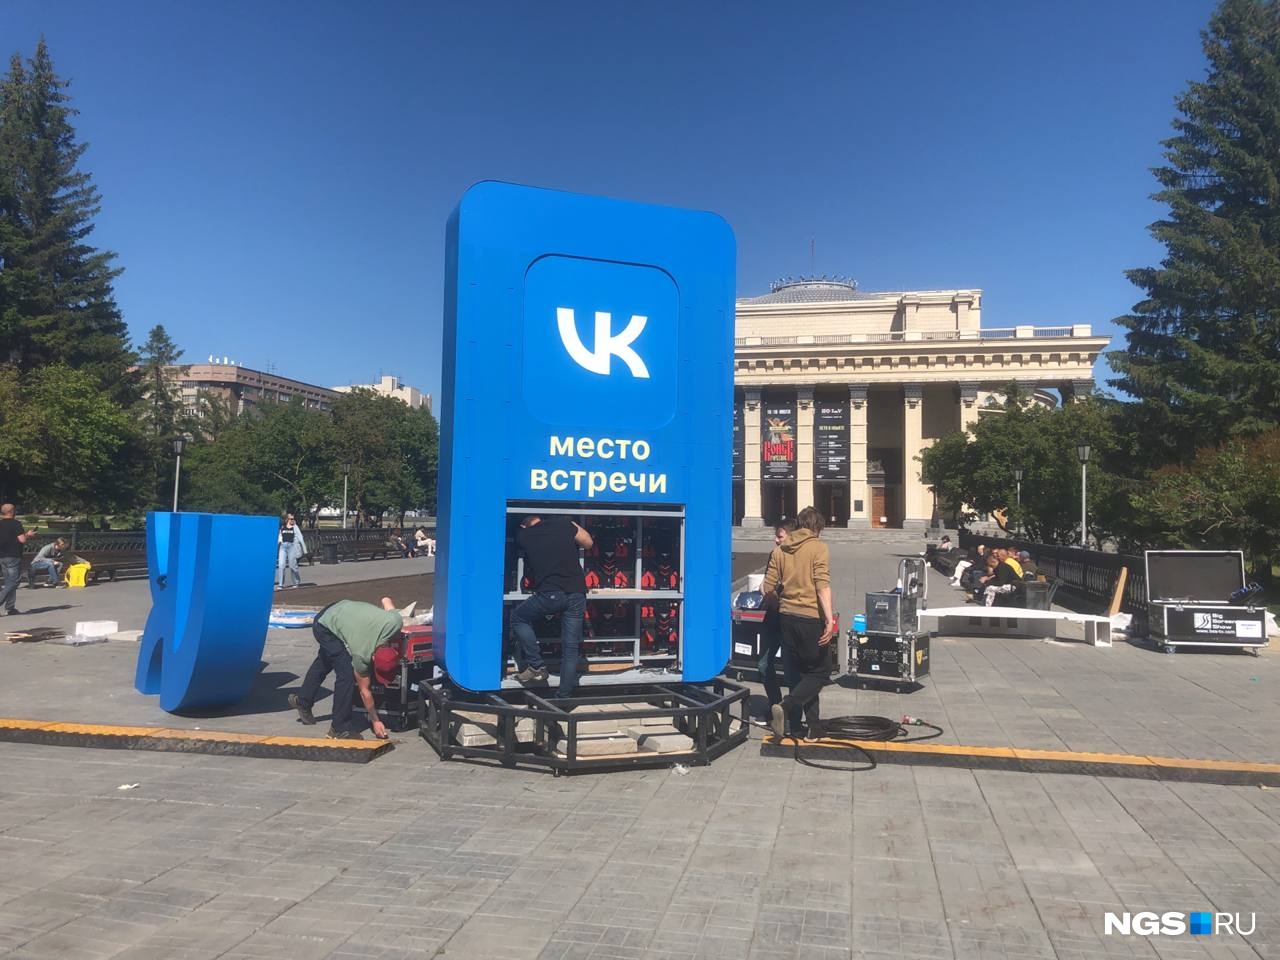 На площади Ленина появилась огромная конструкция синего цвета. Мы узнали, что это будет